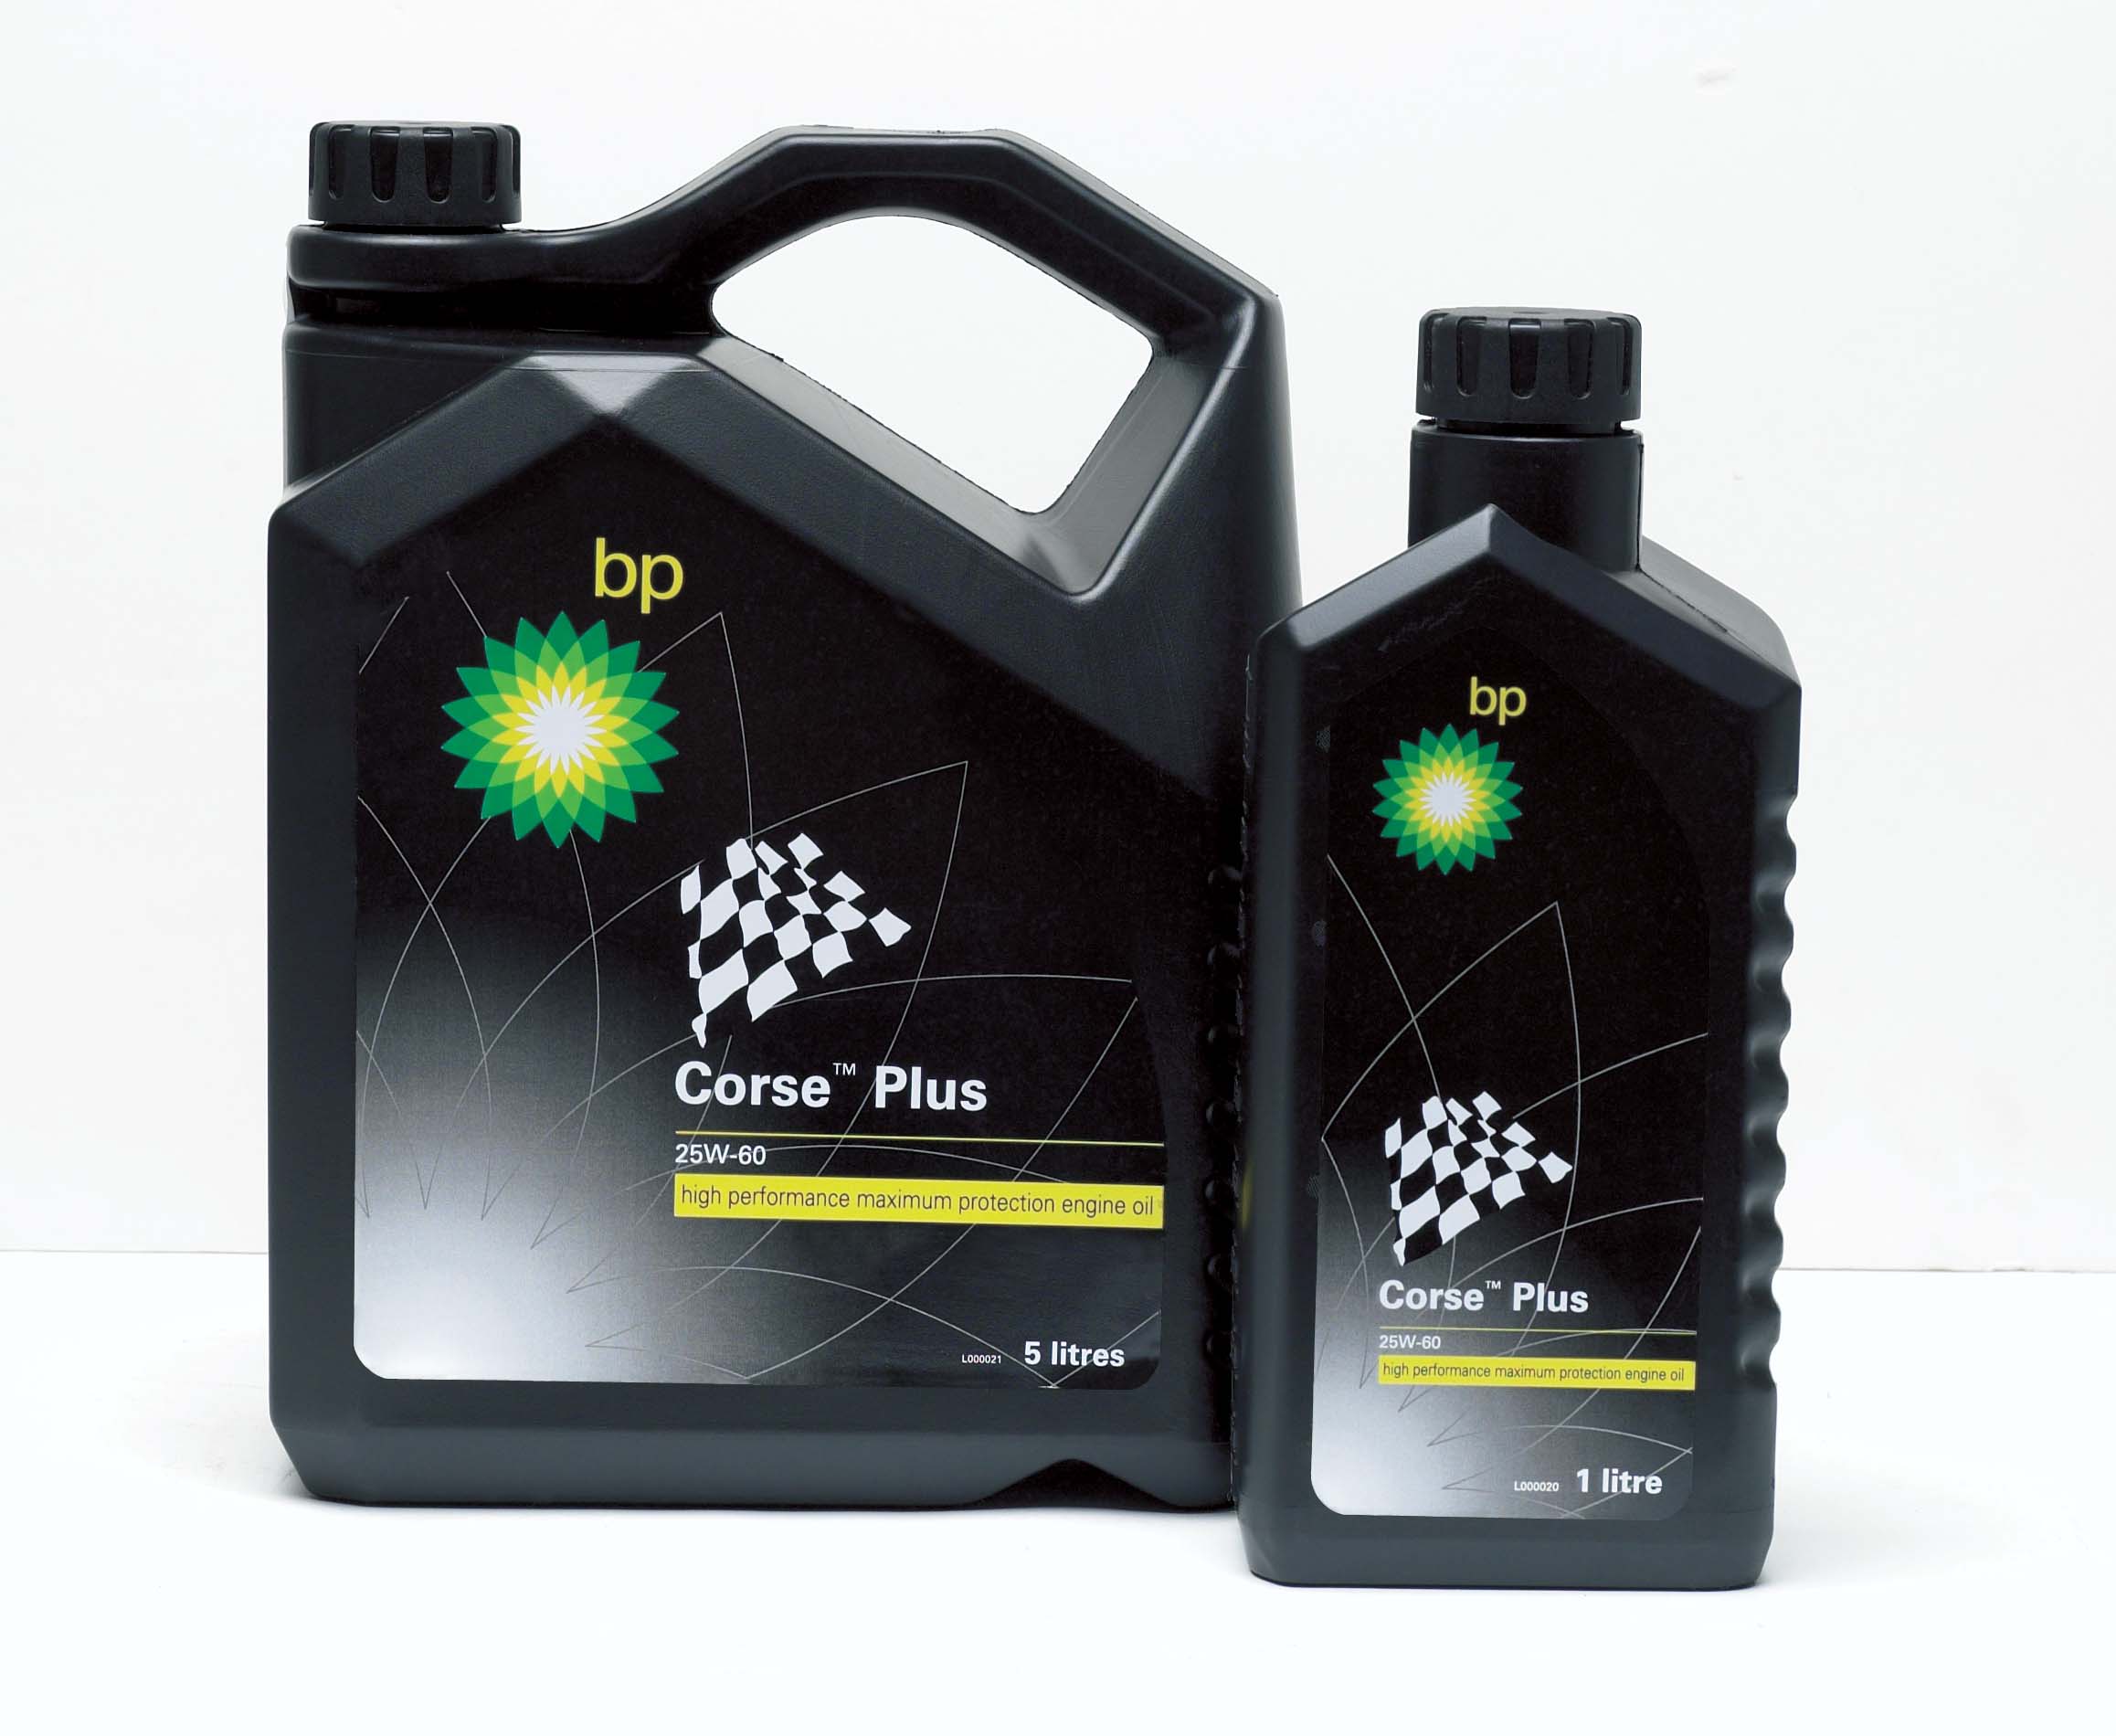 BP Corse Plus 1&5L packs